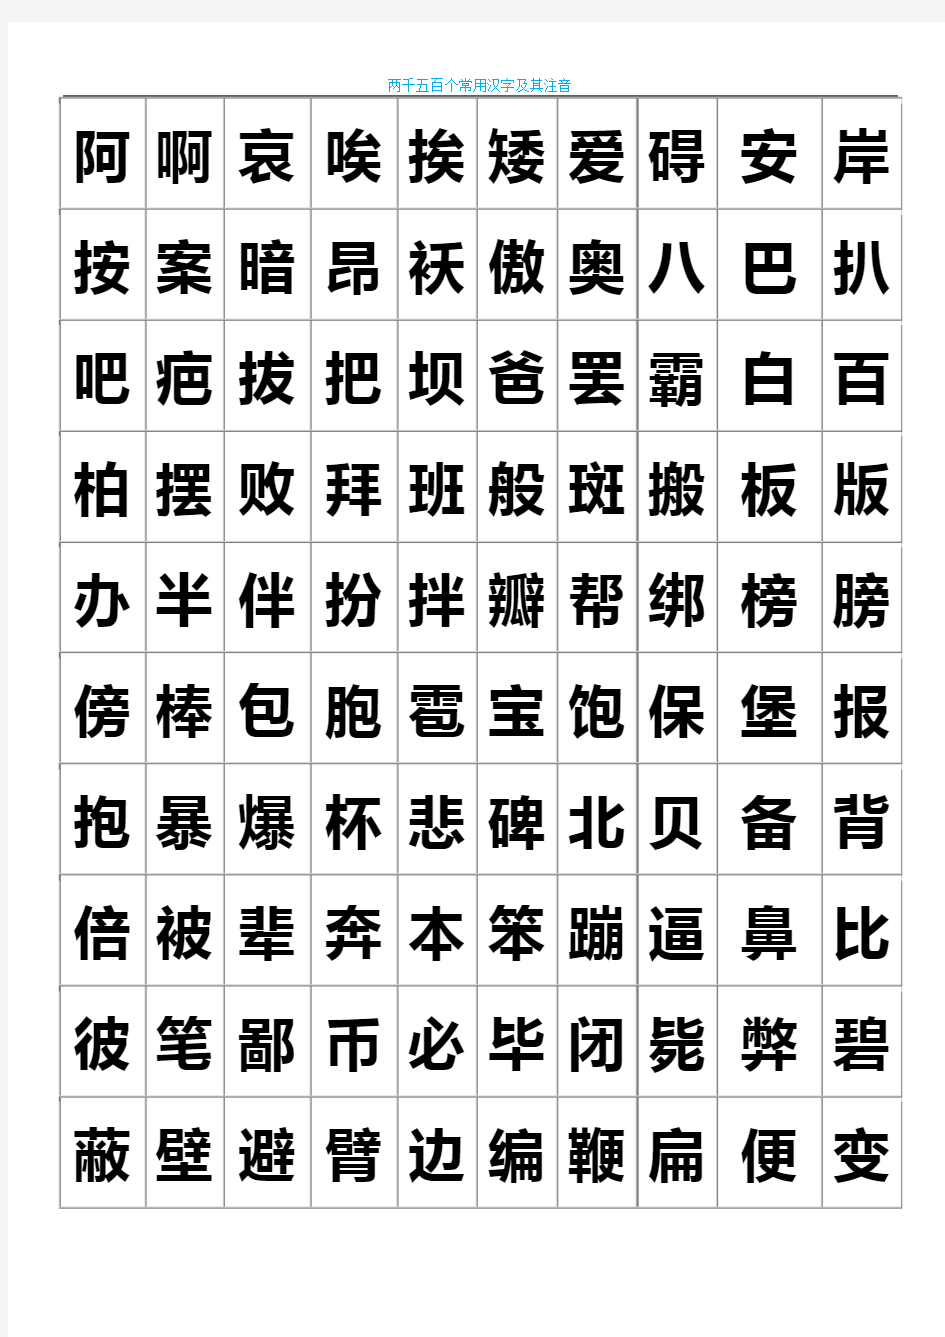 练字-2500个常用汉字大全-好看的字体.